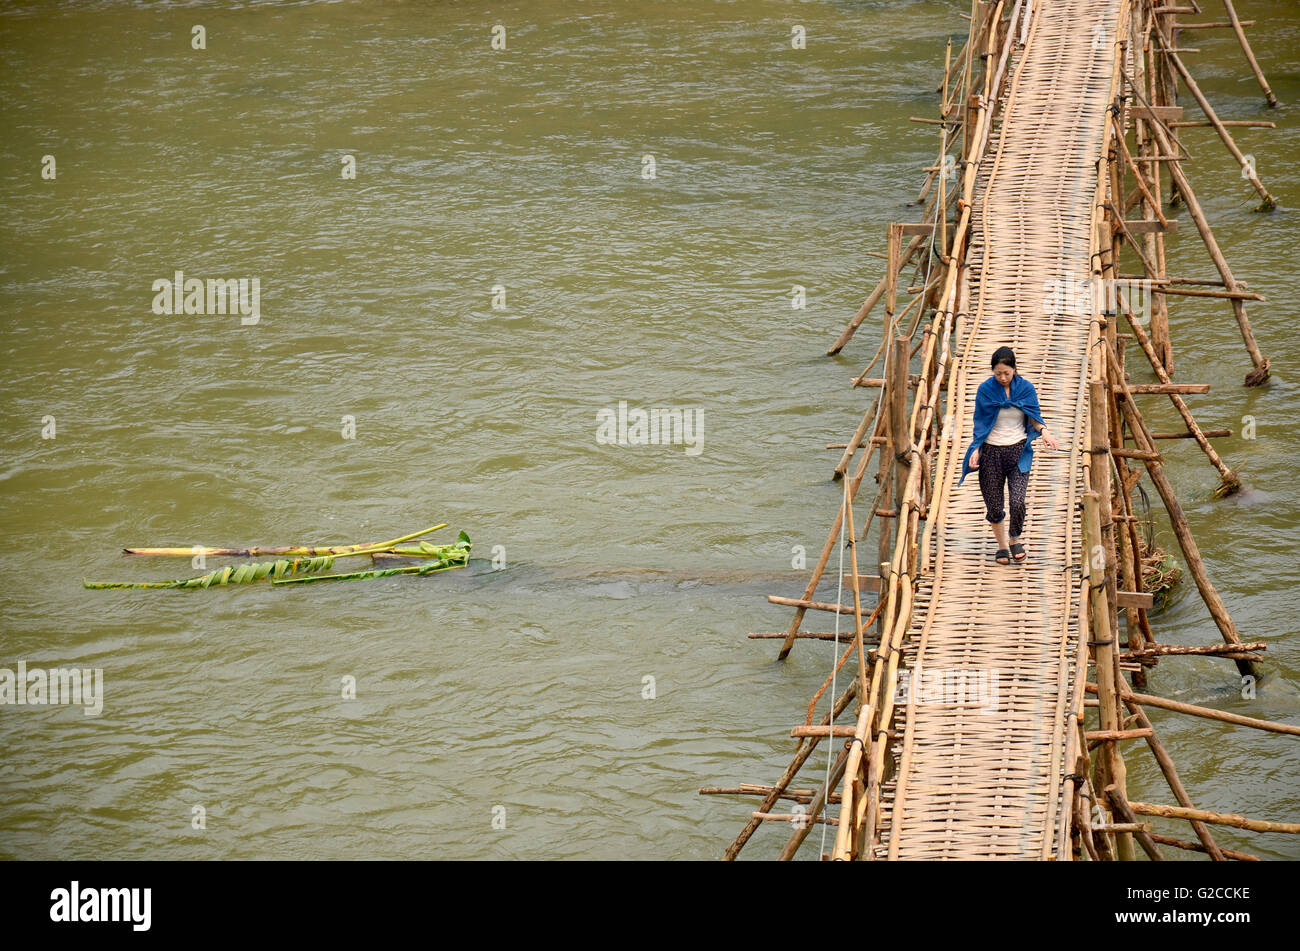 Voyageur et peuple laotien utilisant le bambou pont pour traverser à pied la rivière du Mékong, le 9 avril 2016 à Luang Prabang, Laos Banque D'Images